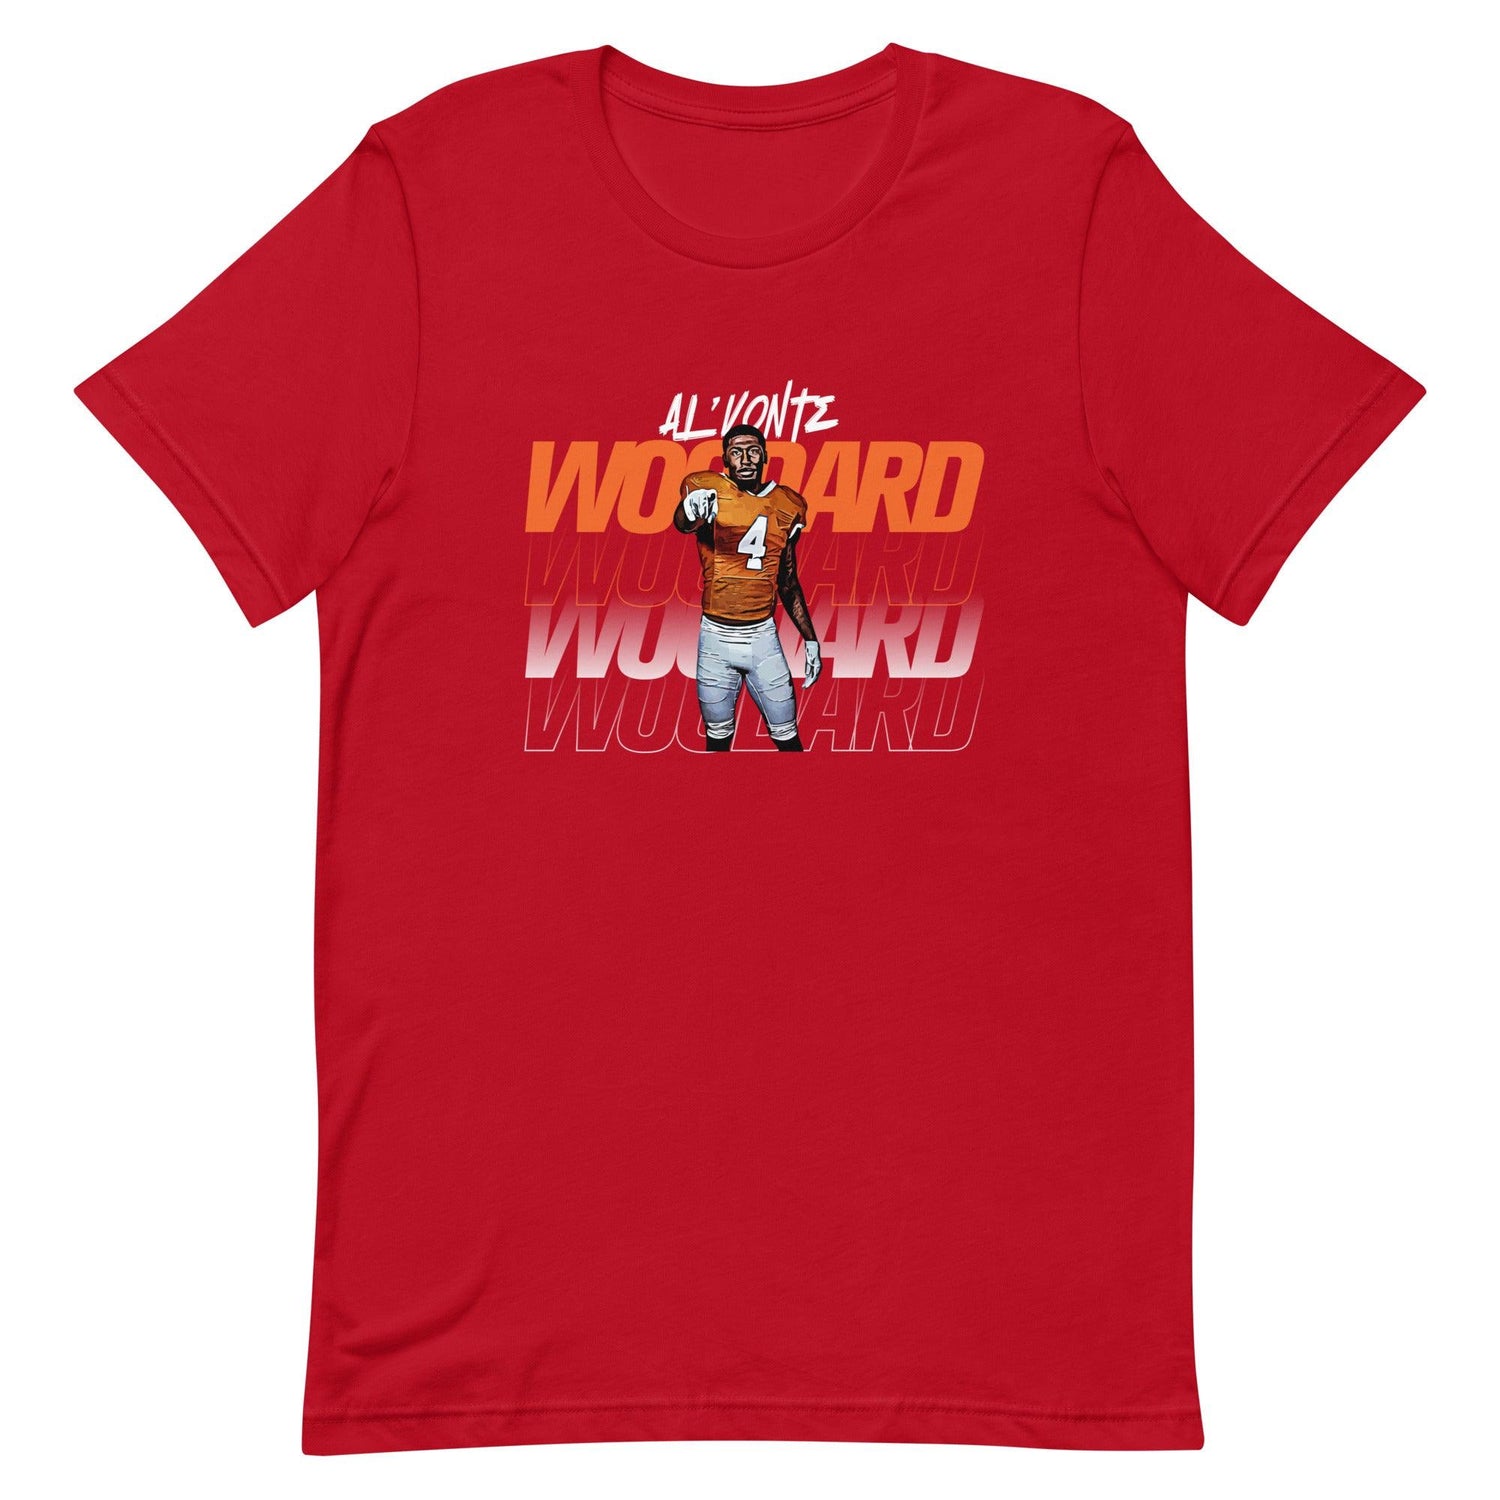 Al’vonte Woodard "Gameday" t-shirt - Fan Arch